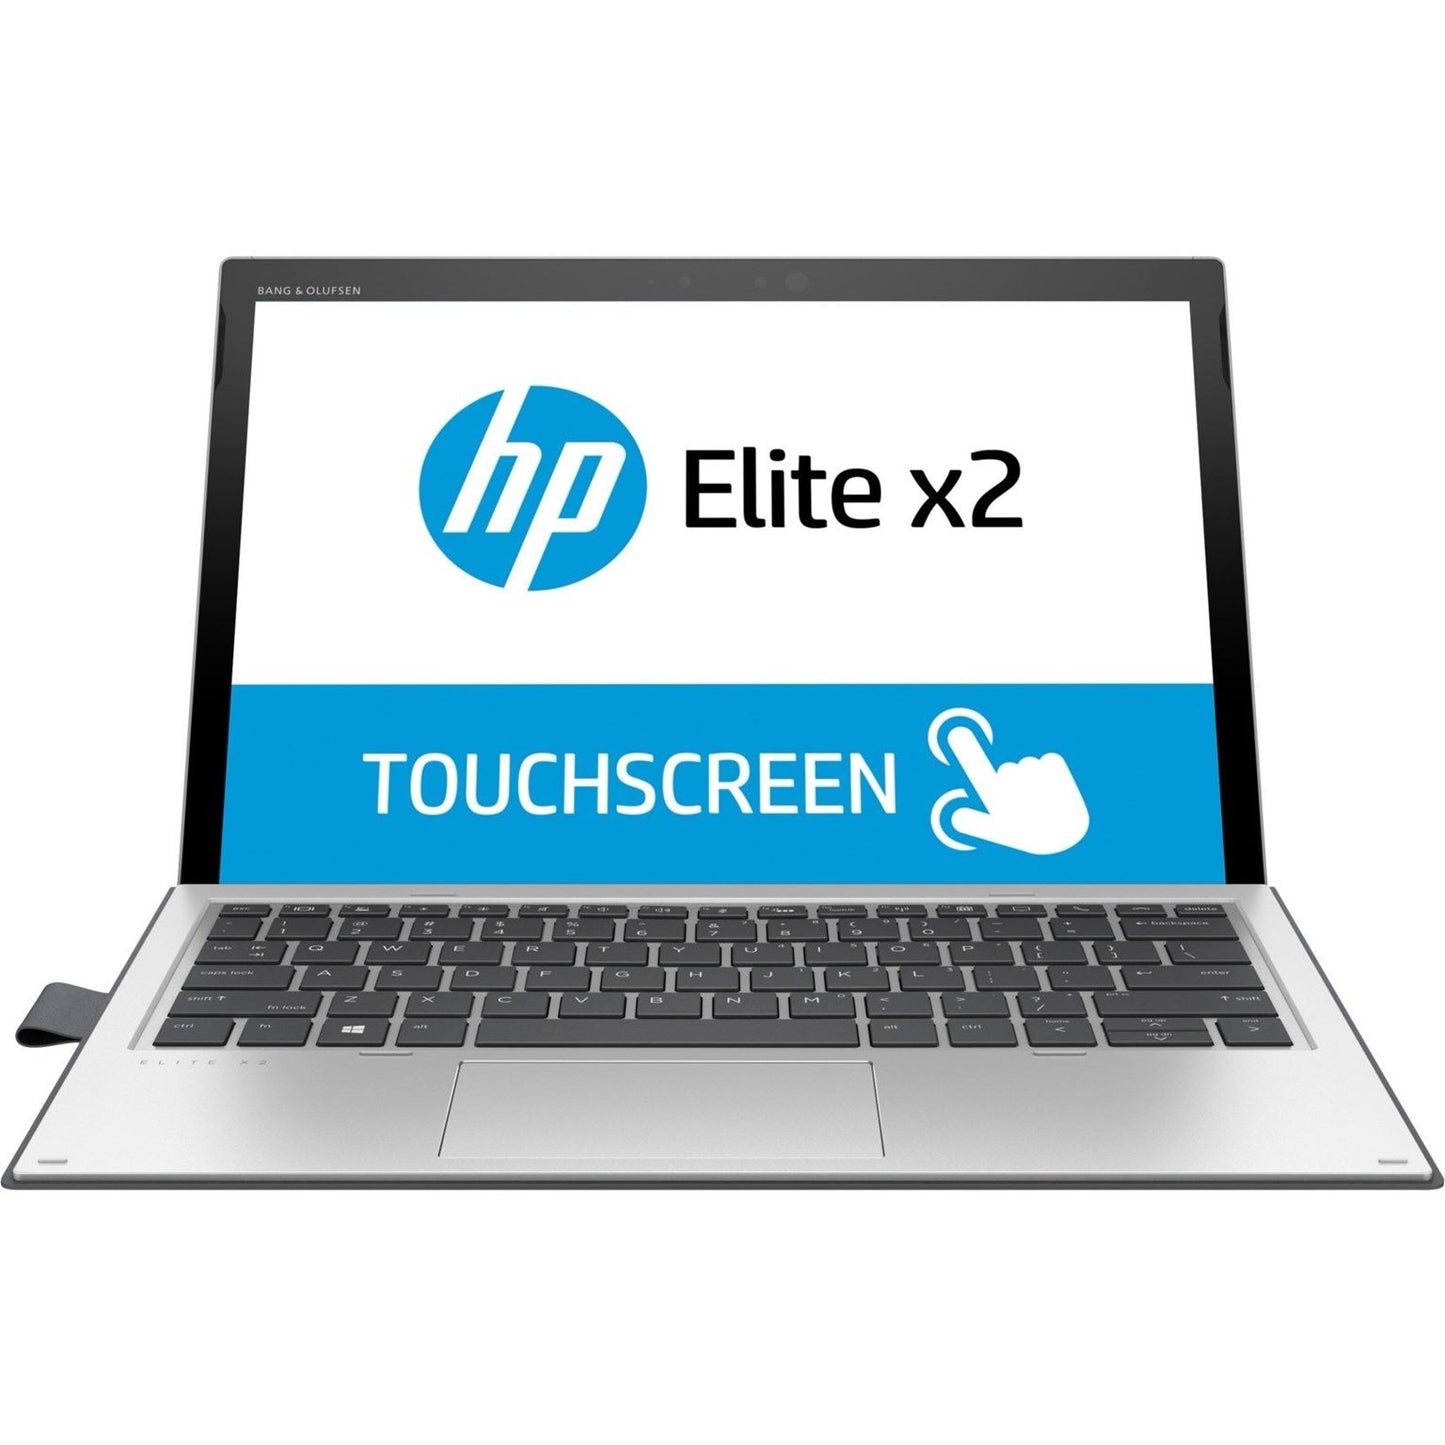 HP ELITE X2 1013 G3 13 Touch i5-8350U 8GB 256GB SSD Win10 Pro LTE refurbished